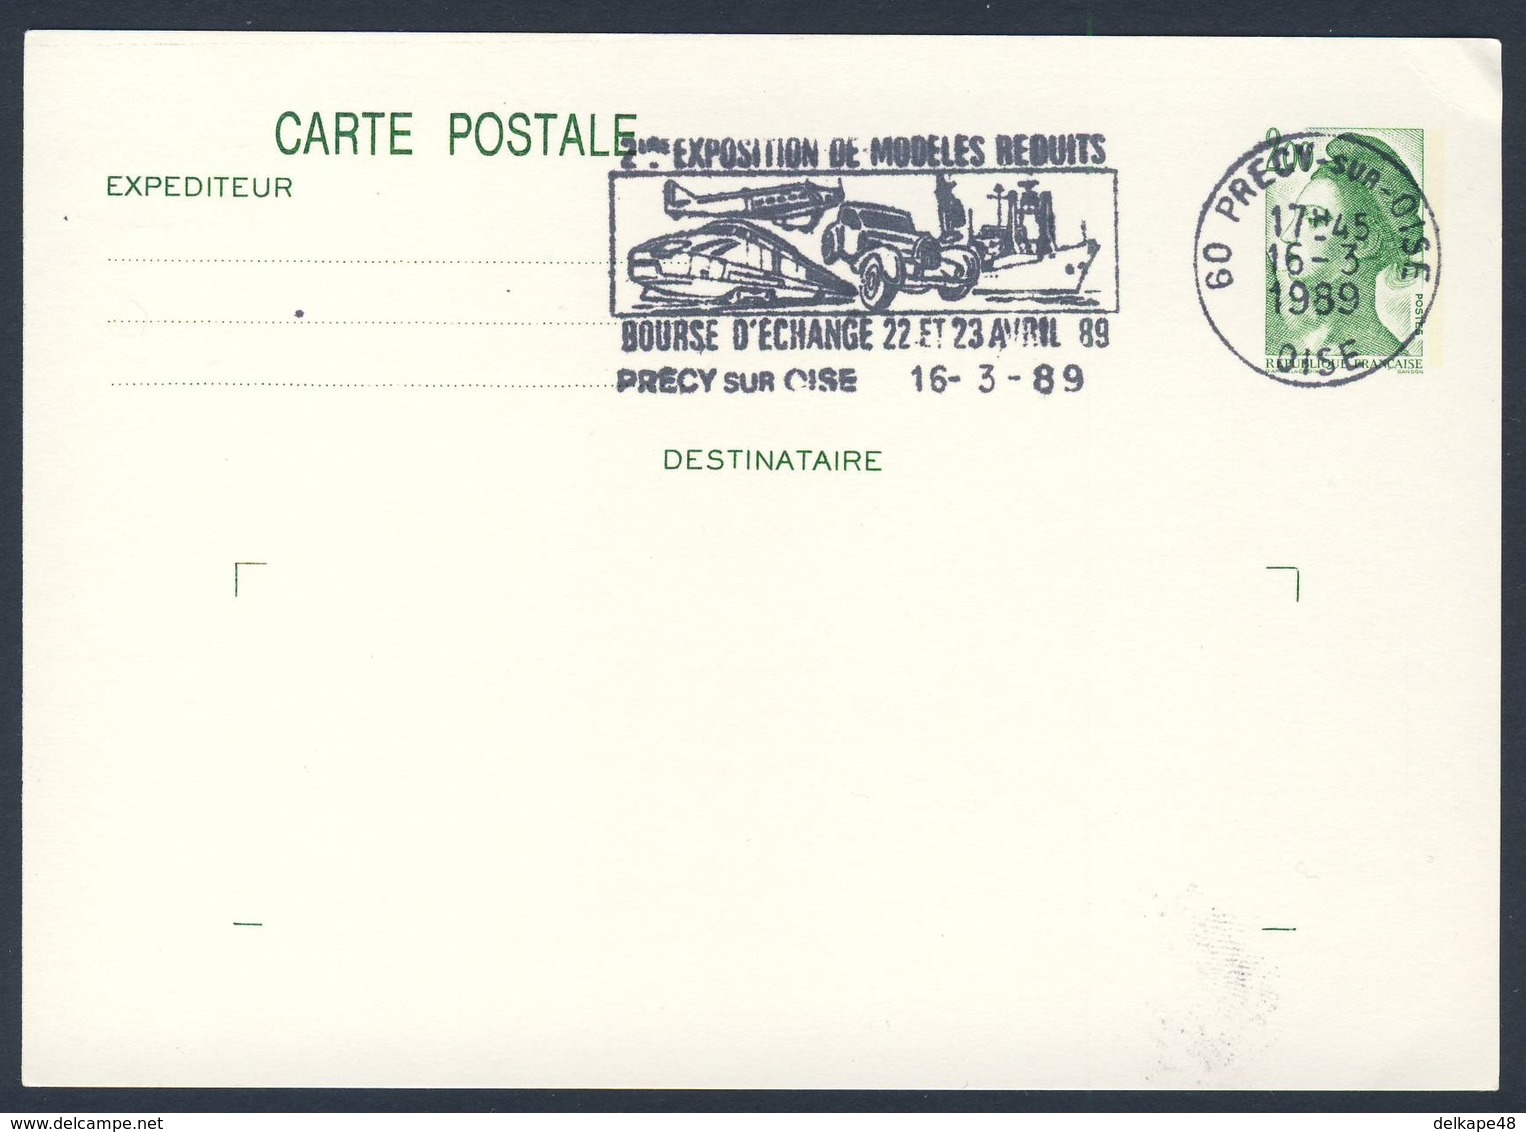 France Rep. Française 1989 Card Karte Carte - 2e Exp. Modeles Reduits, Bourse D'Echange, Précy Sur Oise / Ausstellung - Treinen